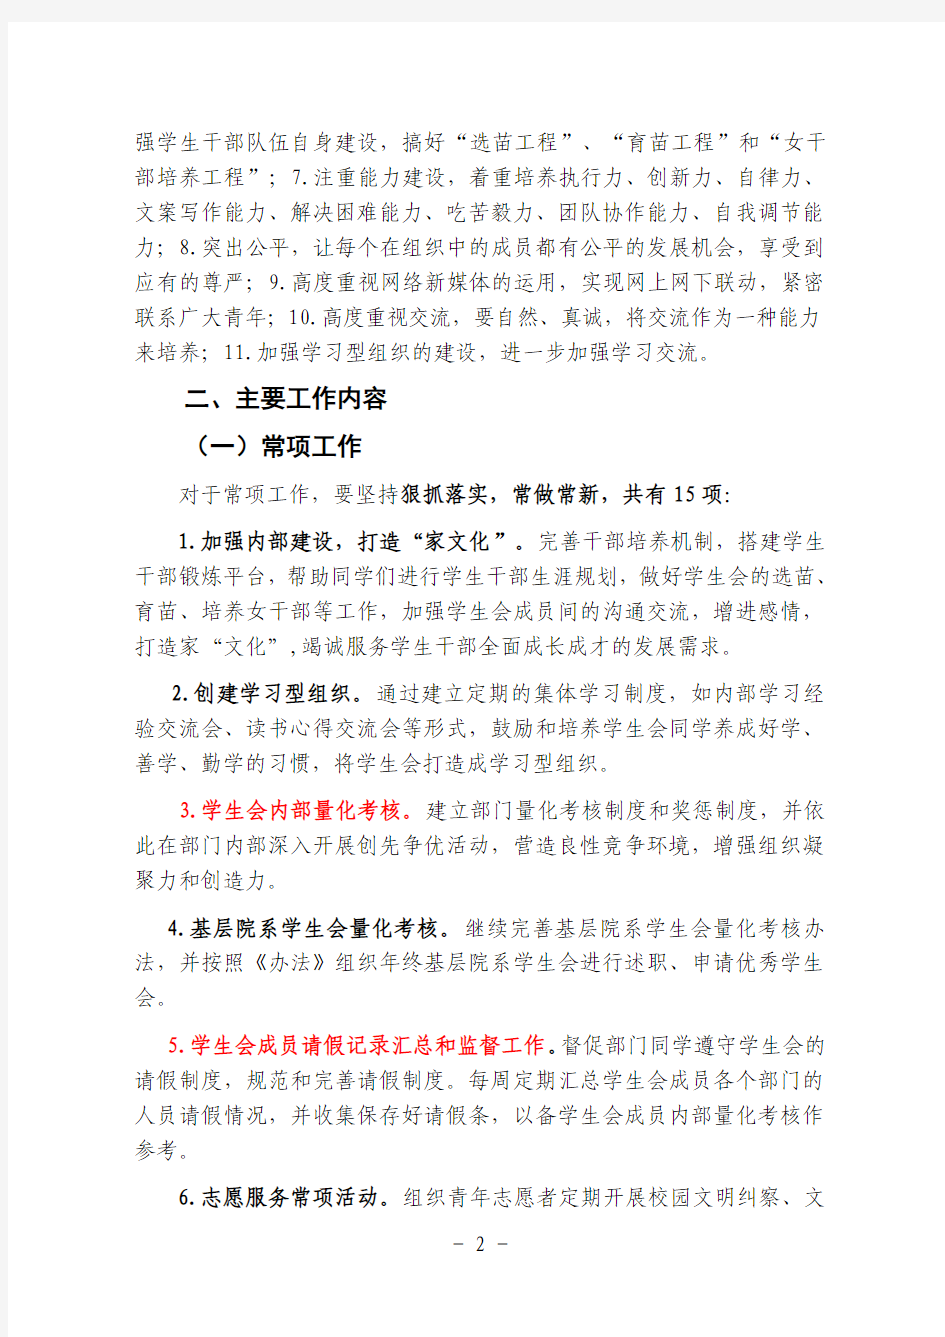 教育系--郑州大学学生会2012年下学期工作计划(院系征求意见稿)_(1)